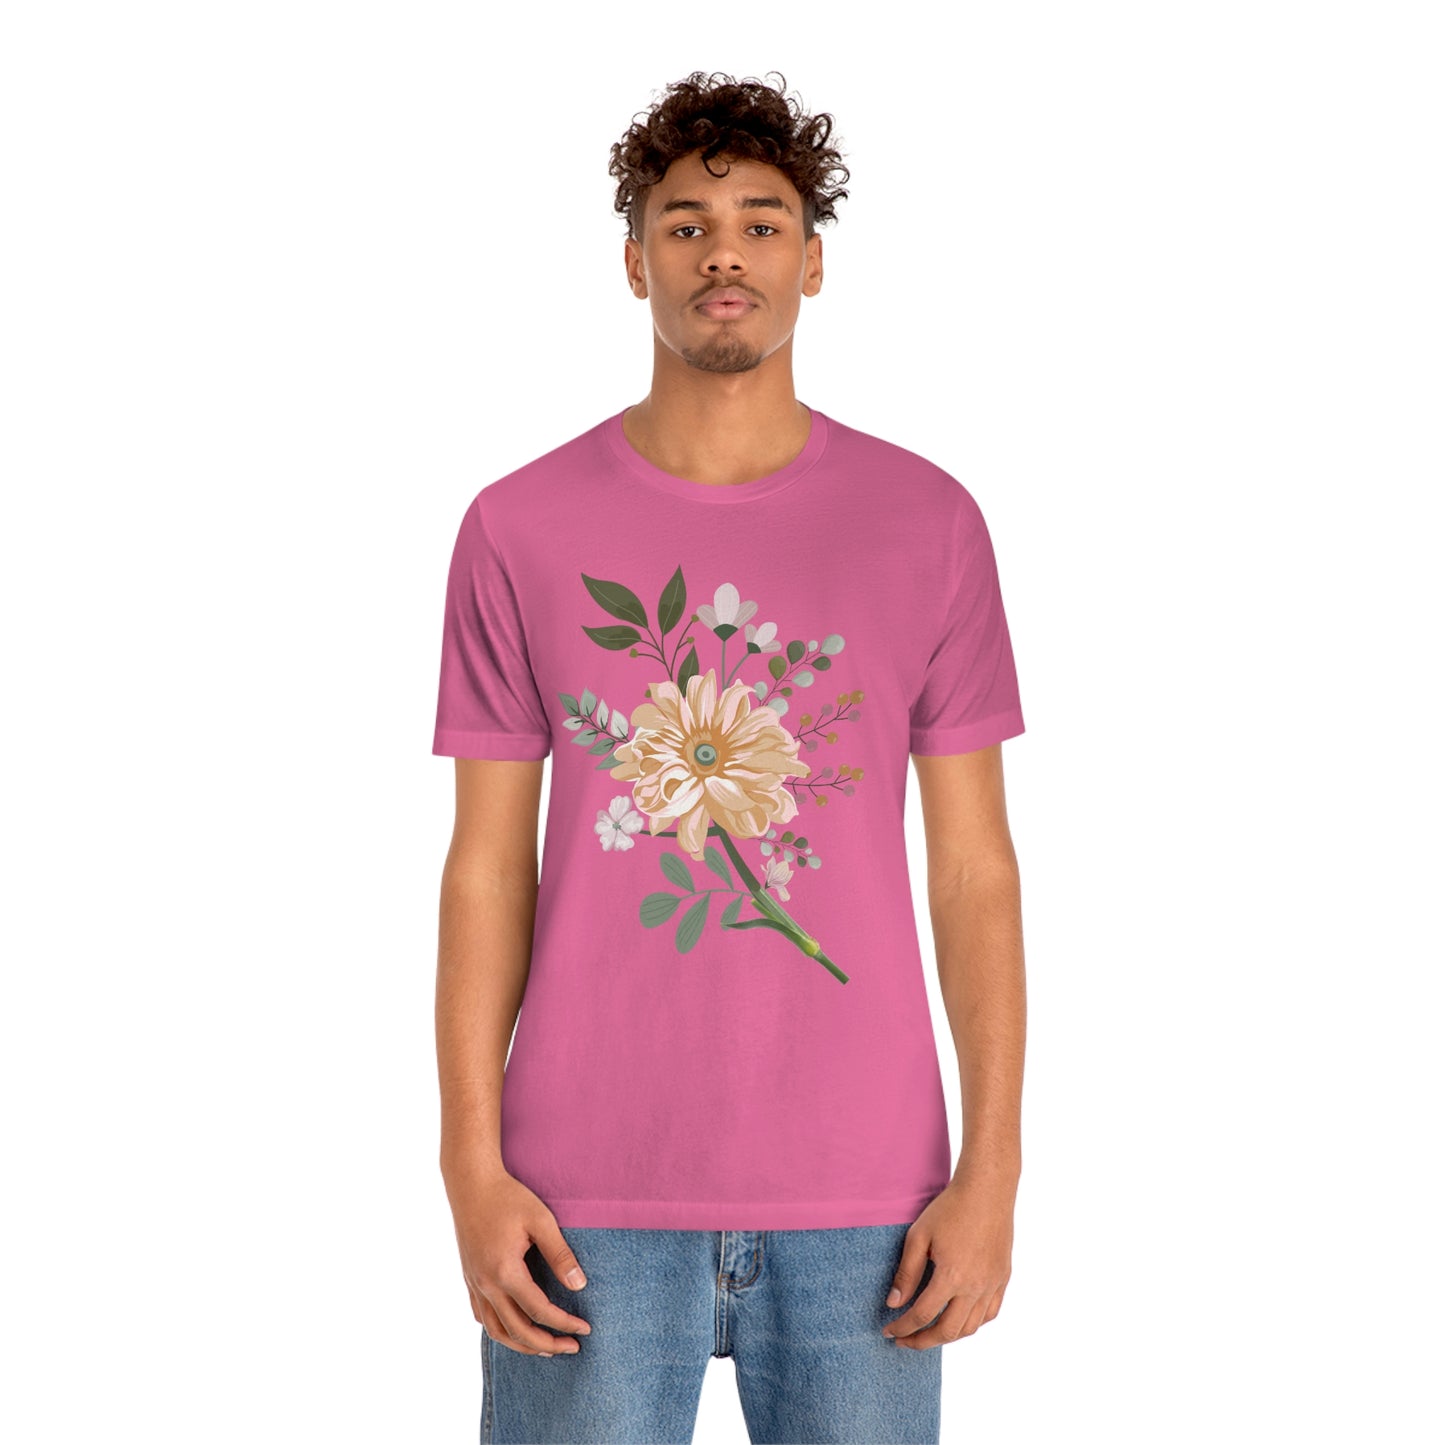 Cute Flower T-shirt - Nature lover Shirt - Cute Flower lover shirt